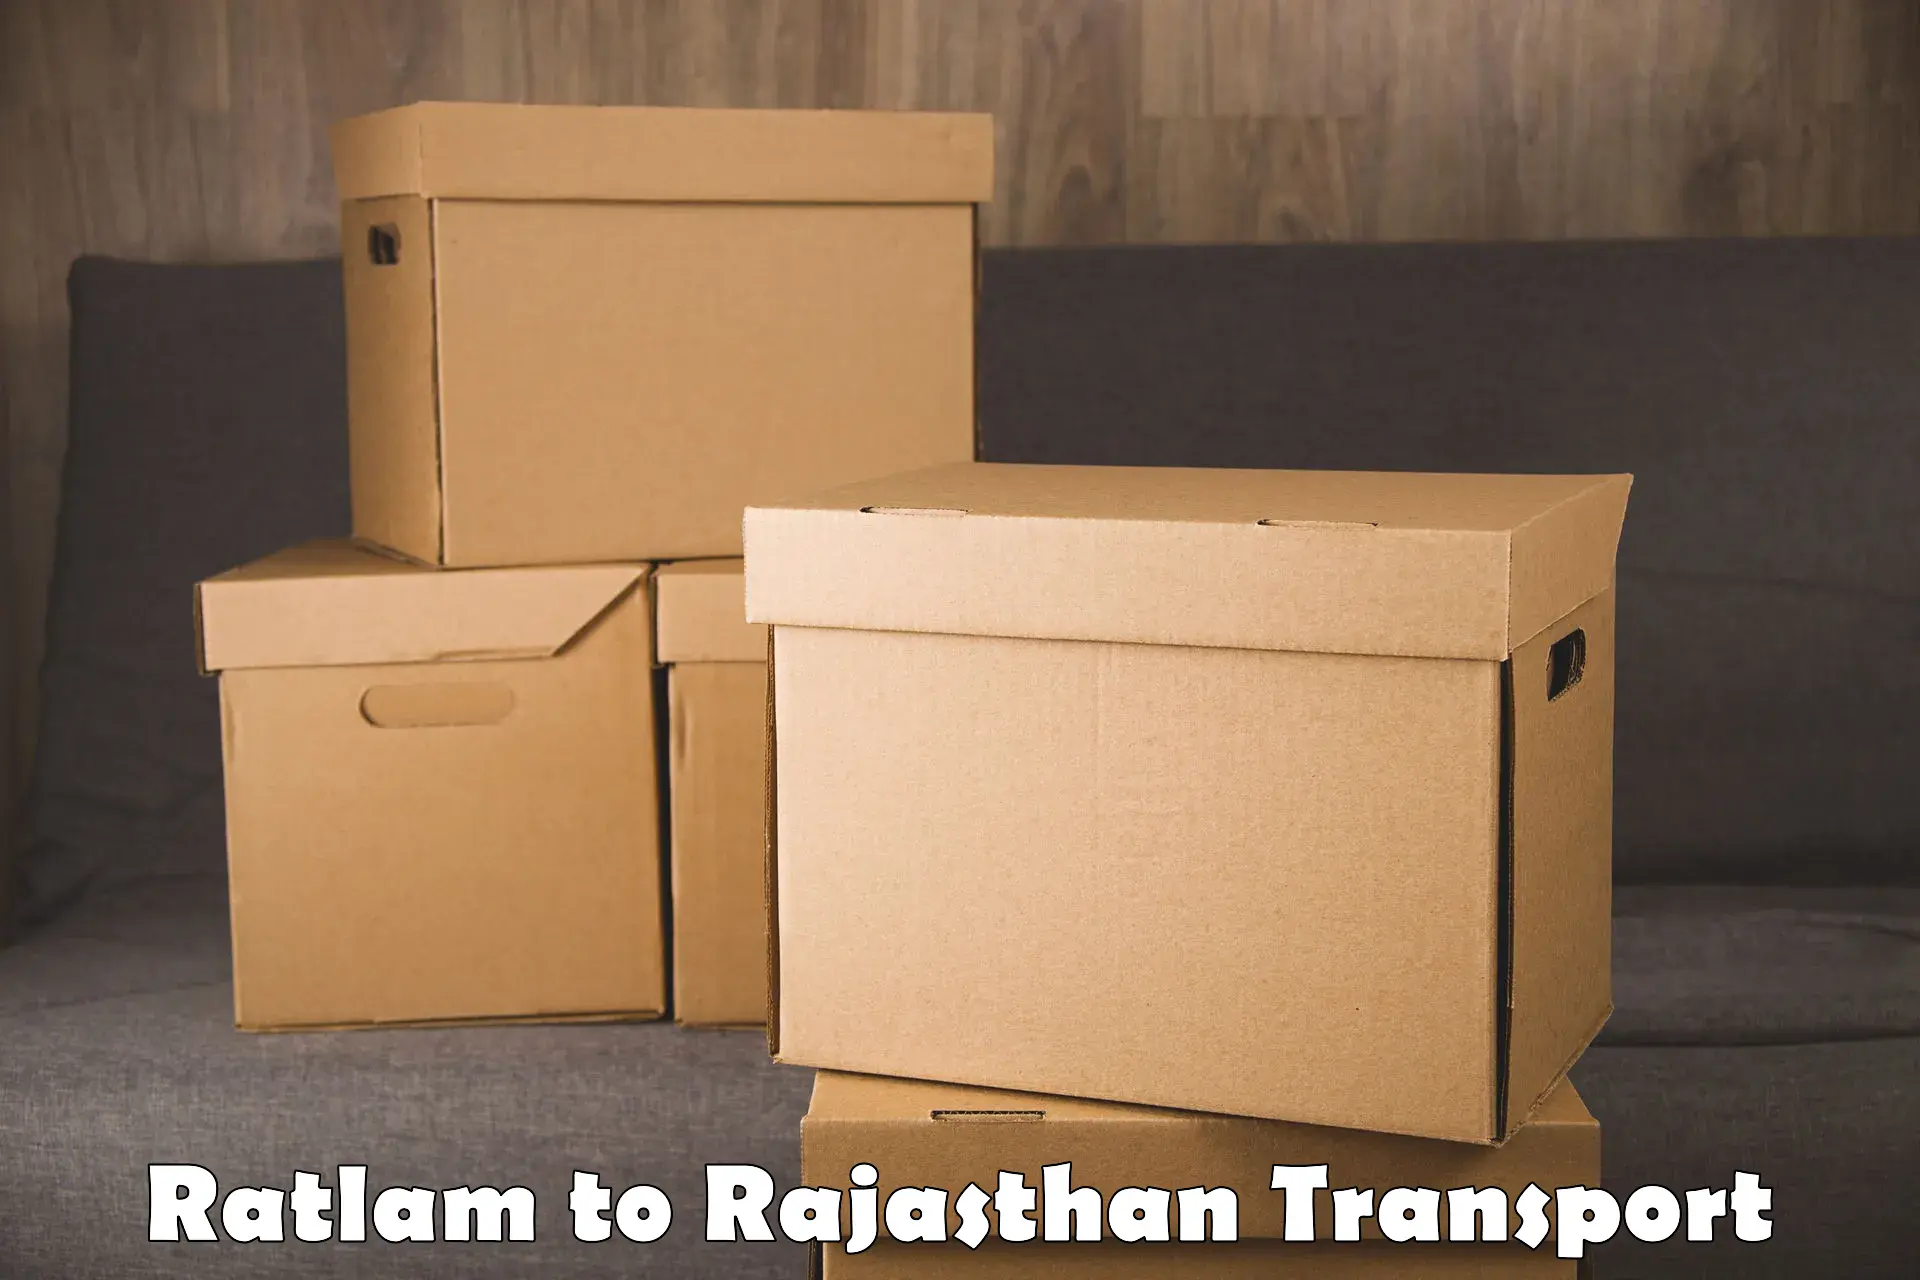 Daily parcel service transport Ratlam to Alwar